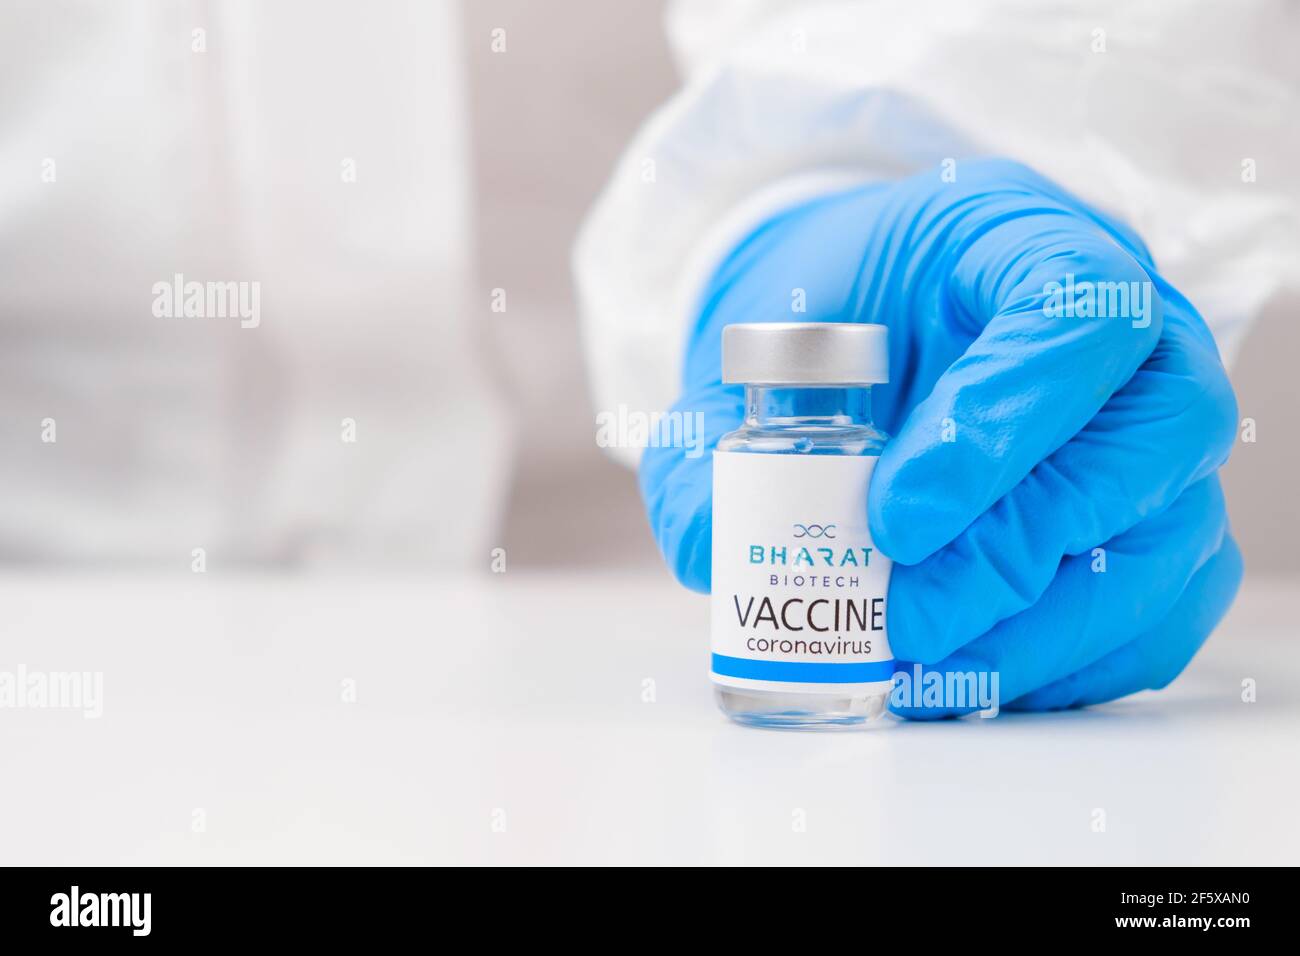 Vaccino Bharat biotech contro SARS-Cov-2, coronavirus o Covid-19 messo sul tavolo da un medico nei guanti di gomma. Foto Stock